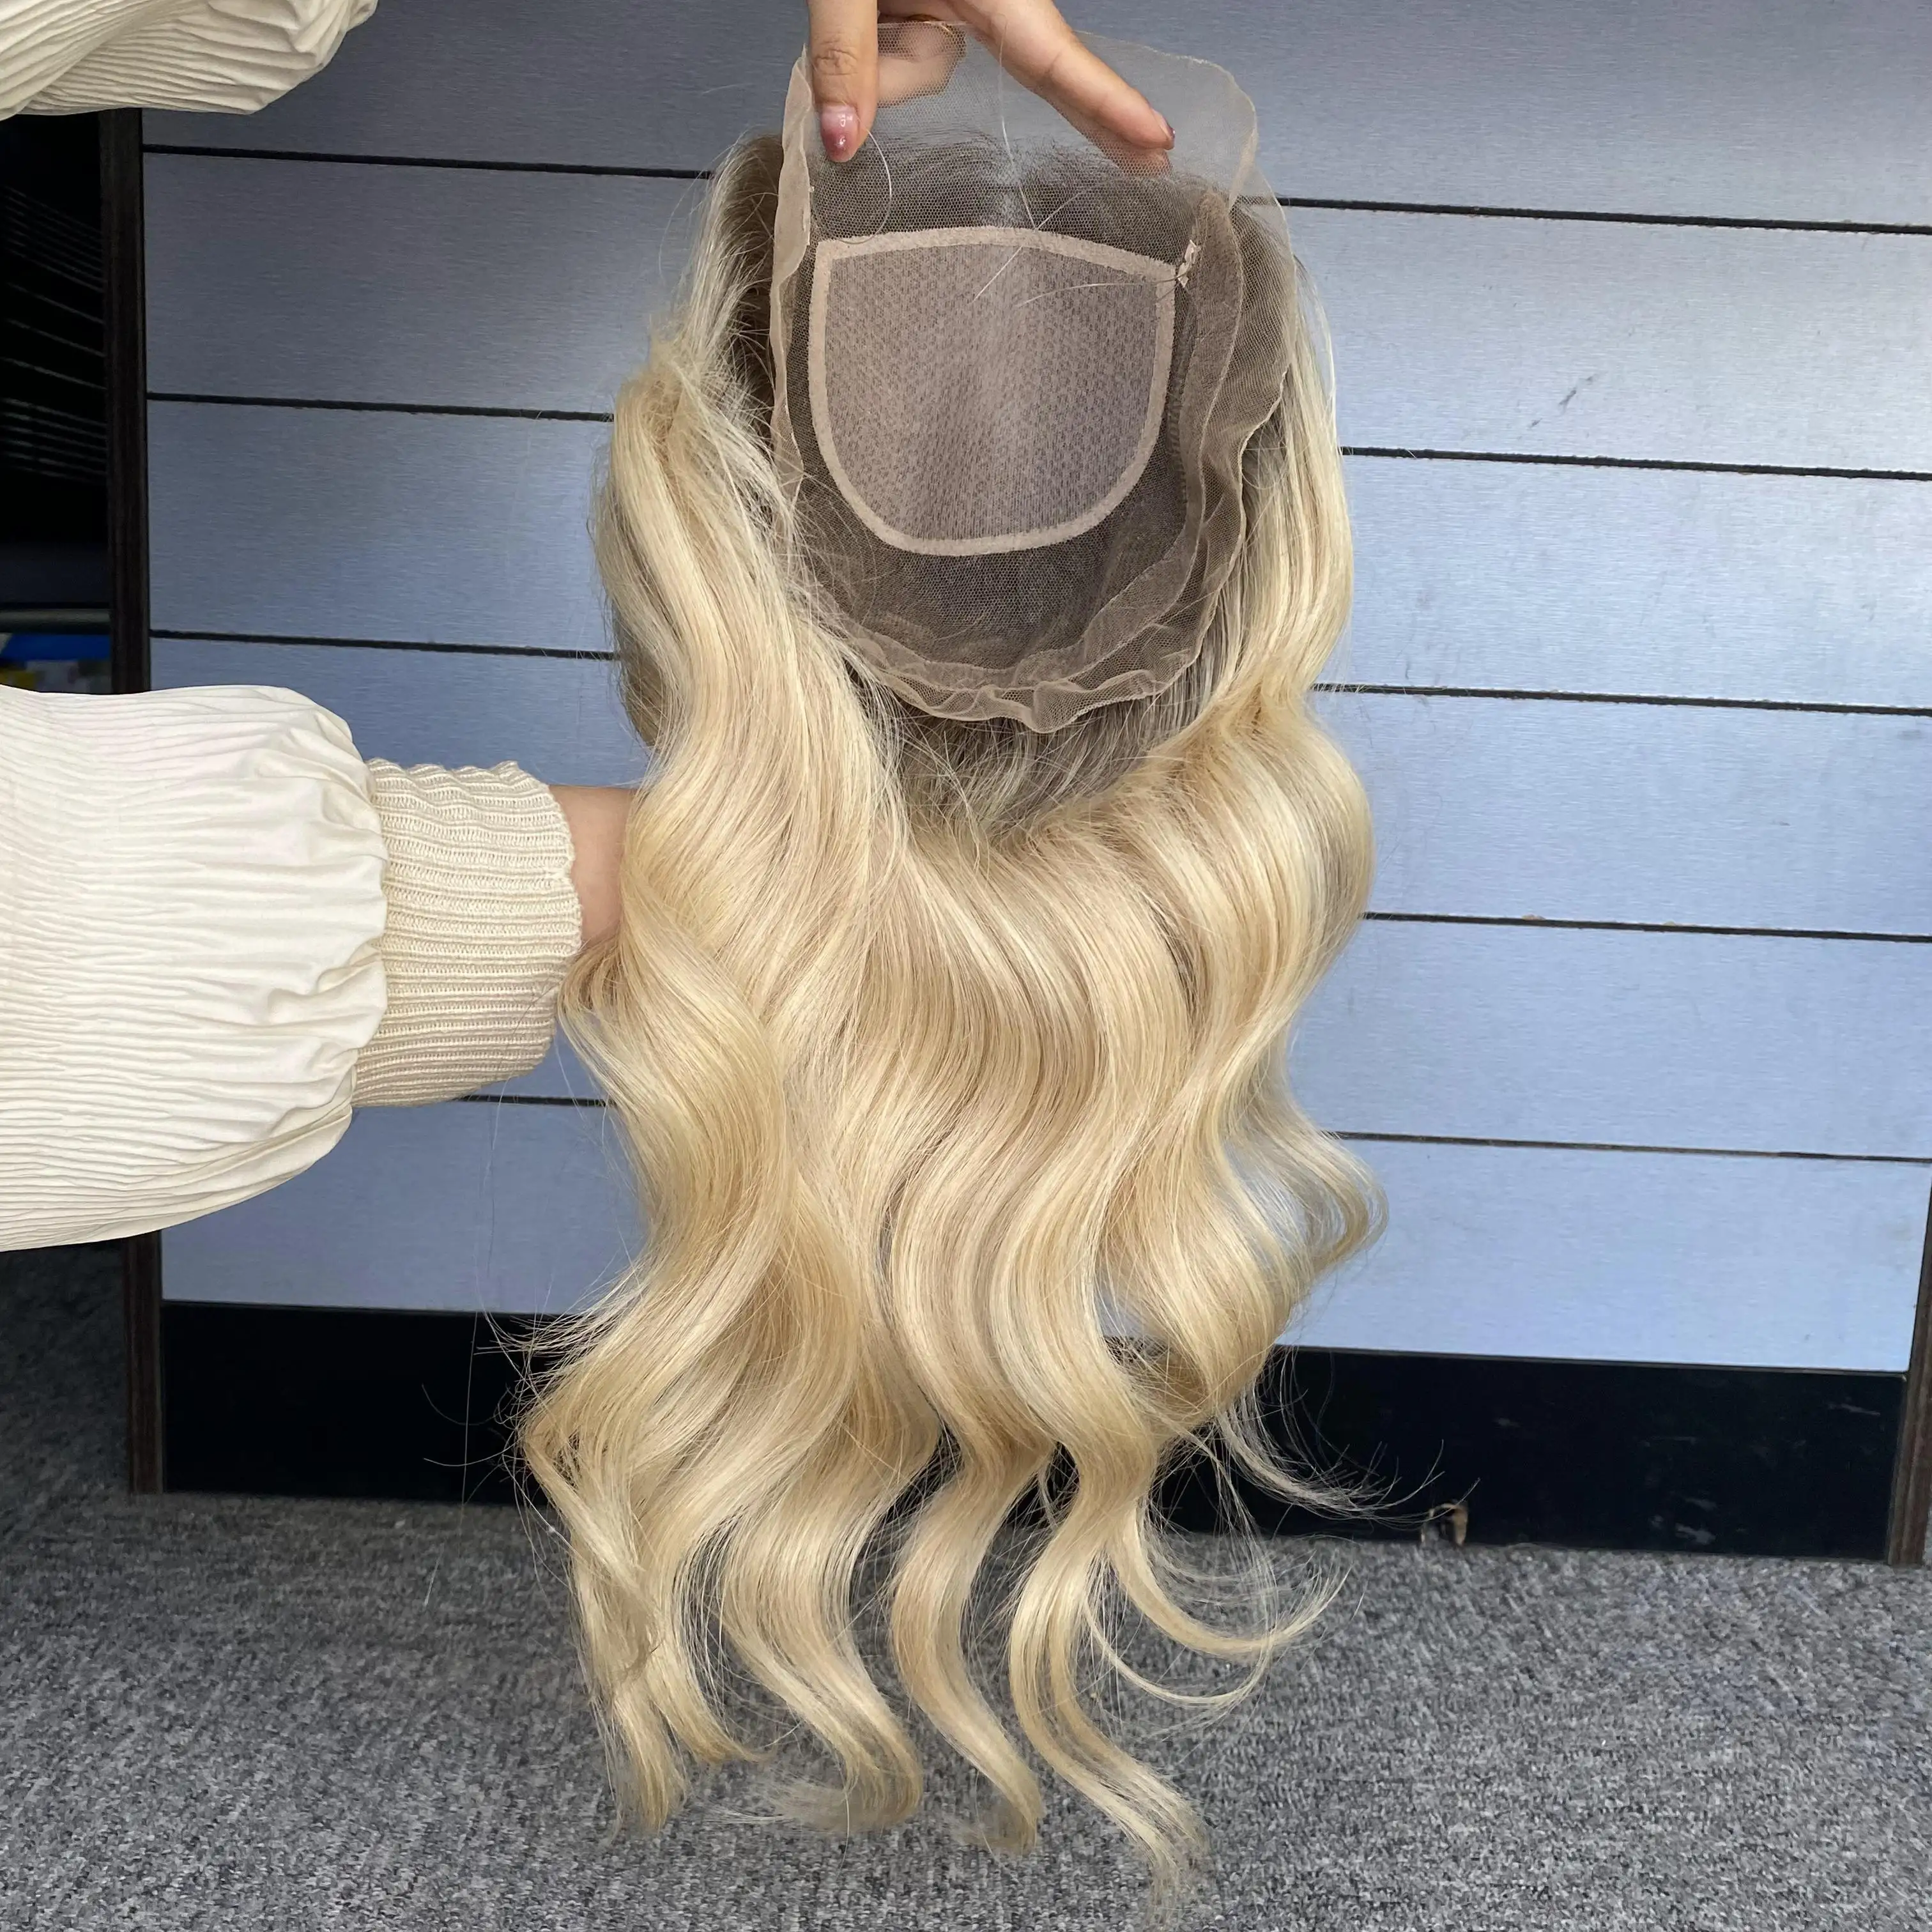 Yeni tasarım bakire saç kadınlar için 8x8 Mini peruk insan saçı Topper artış hacmi saç dökülmesi çözümleri 4x4 ipek taban Toppers